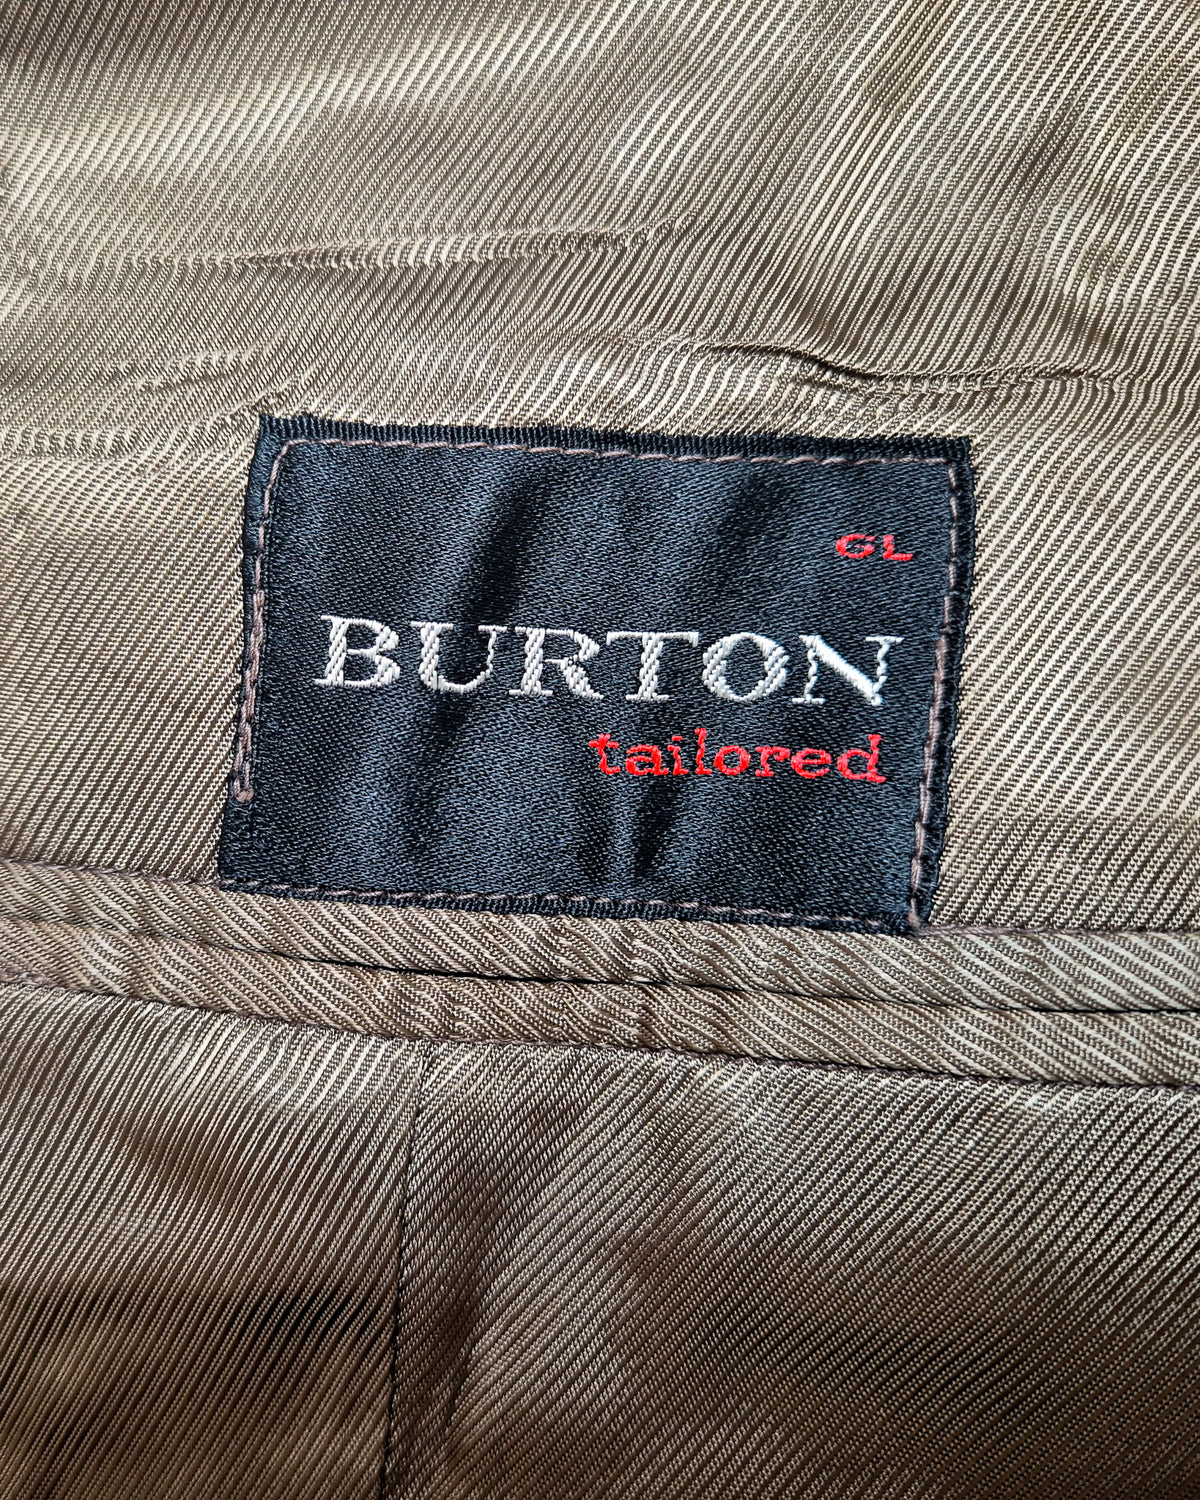 British Burtons Suit 38S SL26